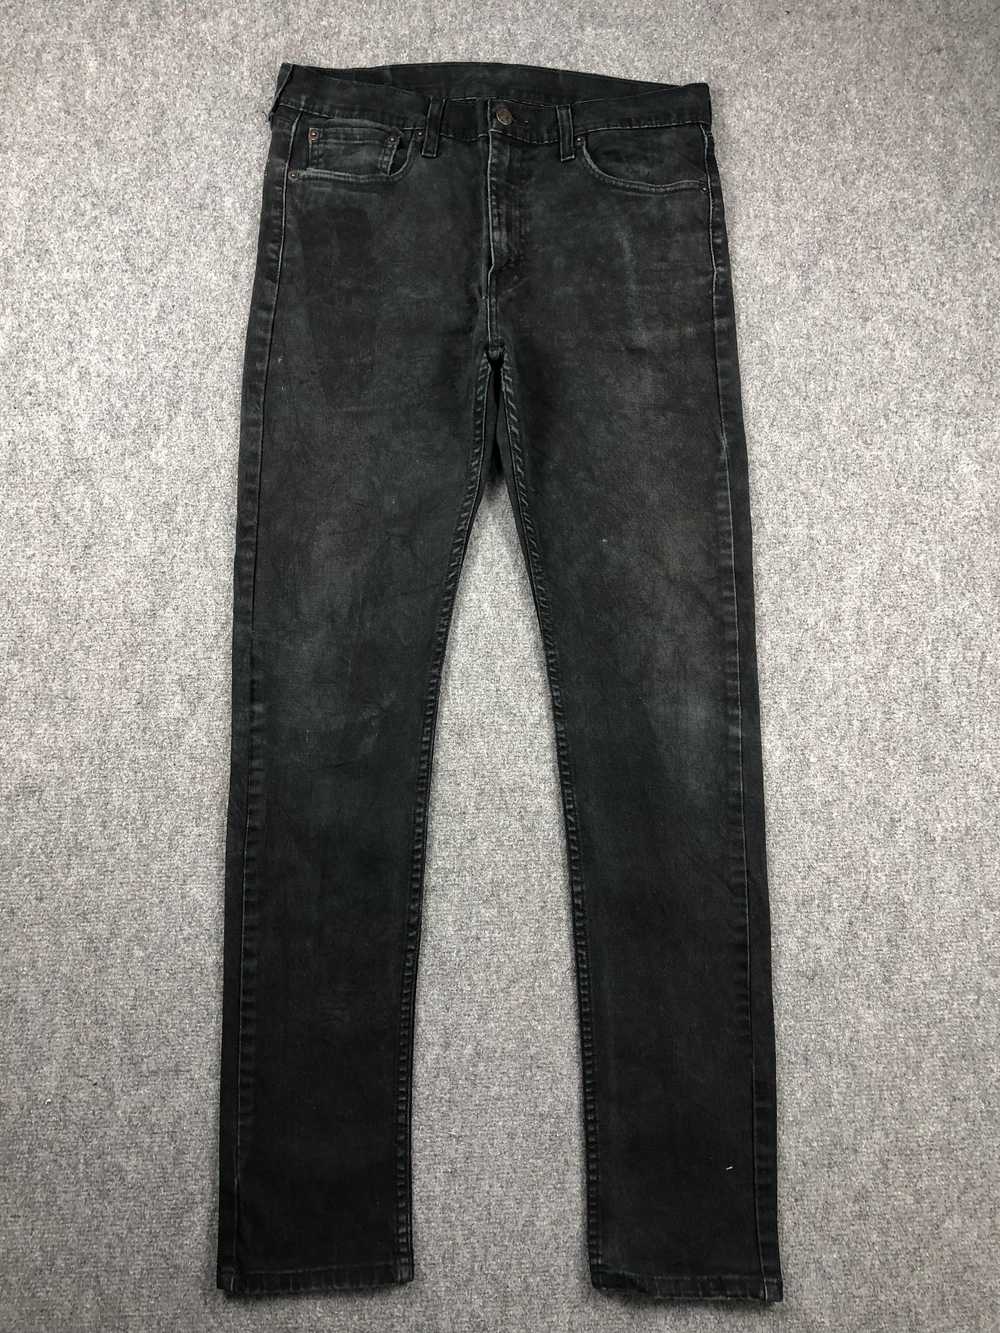 Vintage - Vintage Levis 510 Faded Black Jeans - image 1